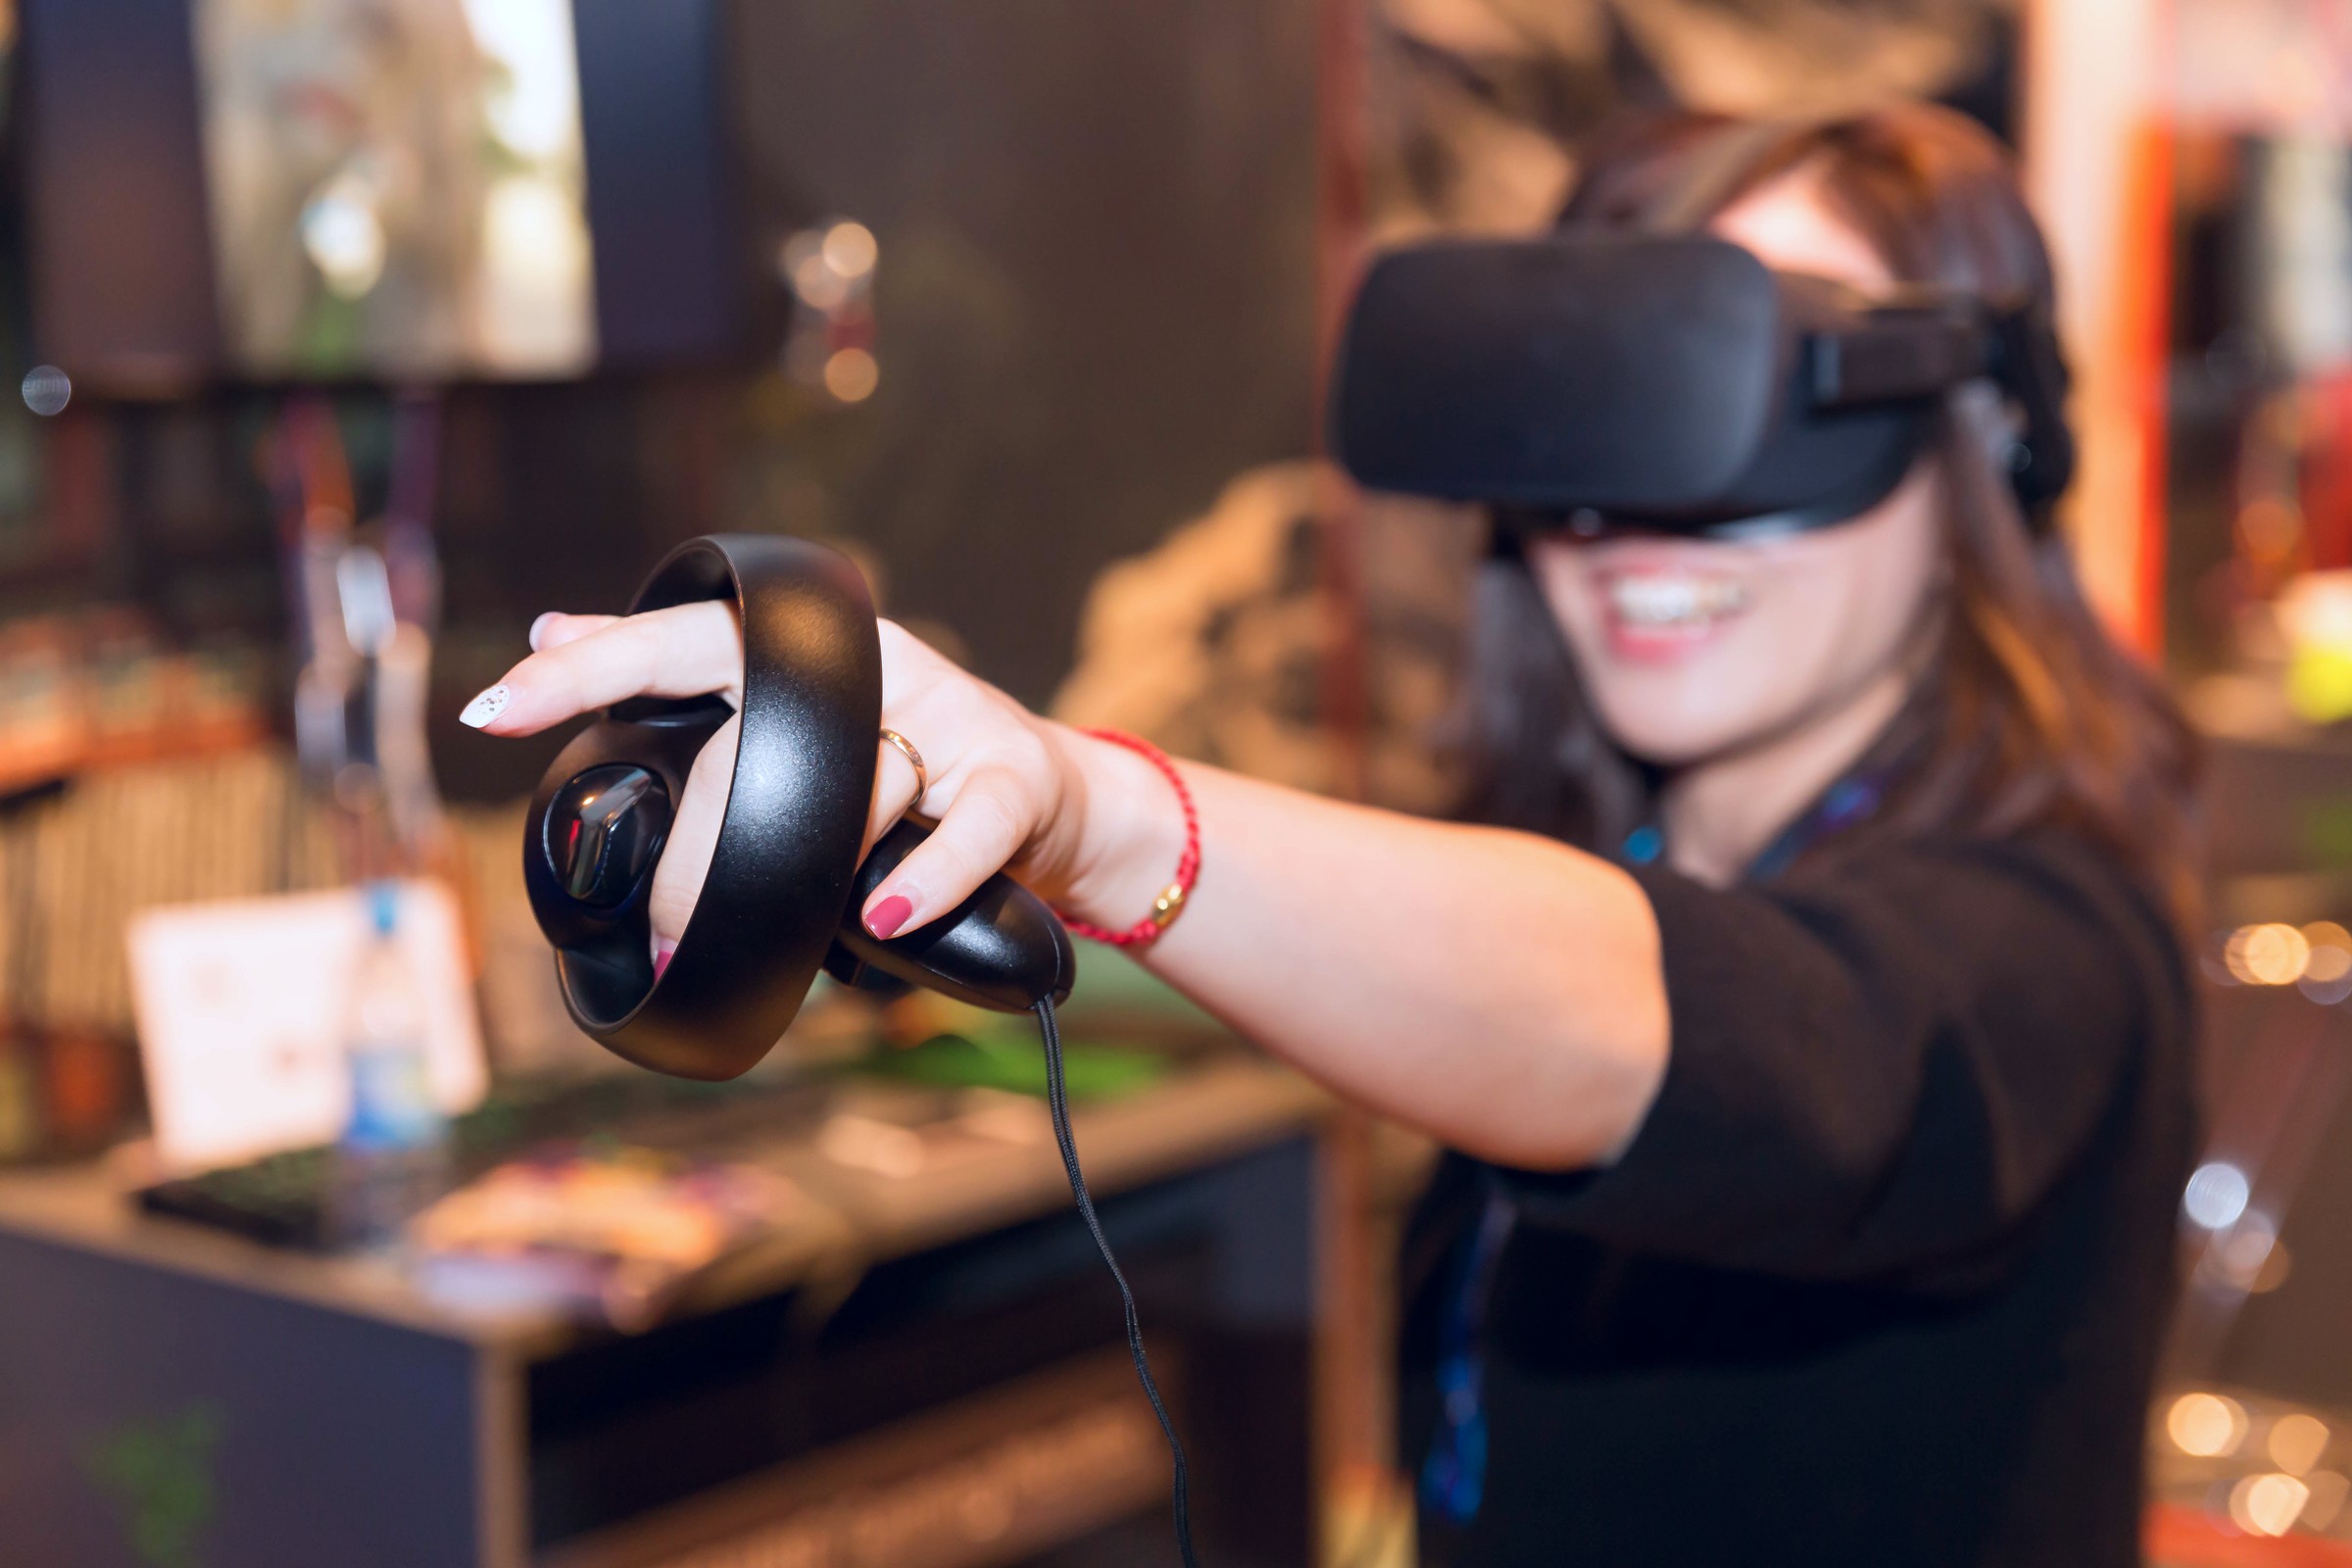 Vr очки oculus 3. VR аттракцион Окулус 2. ВР очки Oculus. Окулус рифт 3. Виртуальная реальность (Virtual reality, VR).